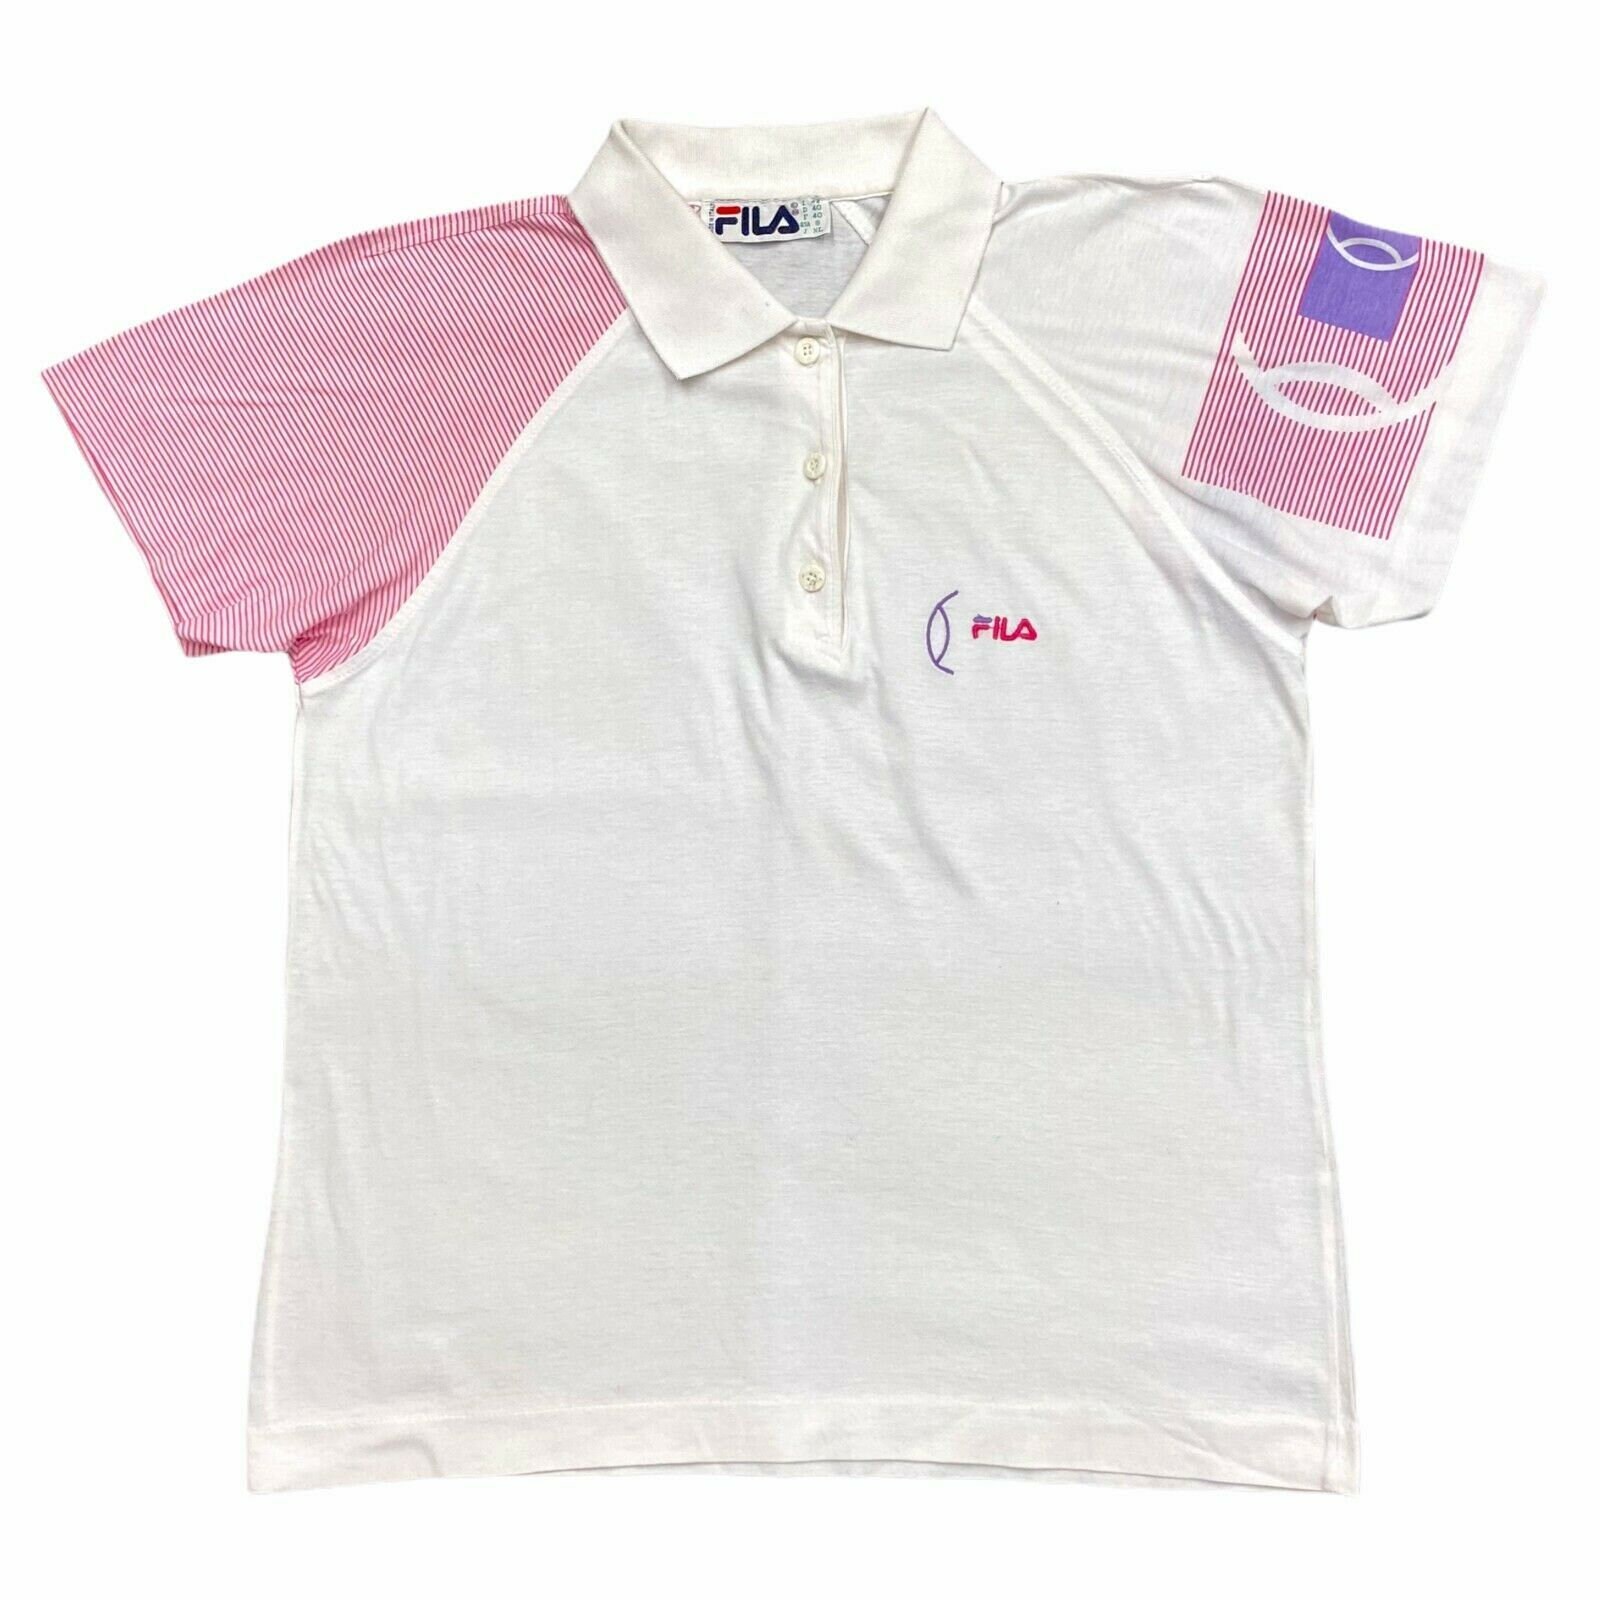 Fila Womens Polo Shirt Vintage 90s Retro Tennis Sportswear - Etsy Israel